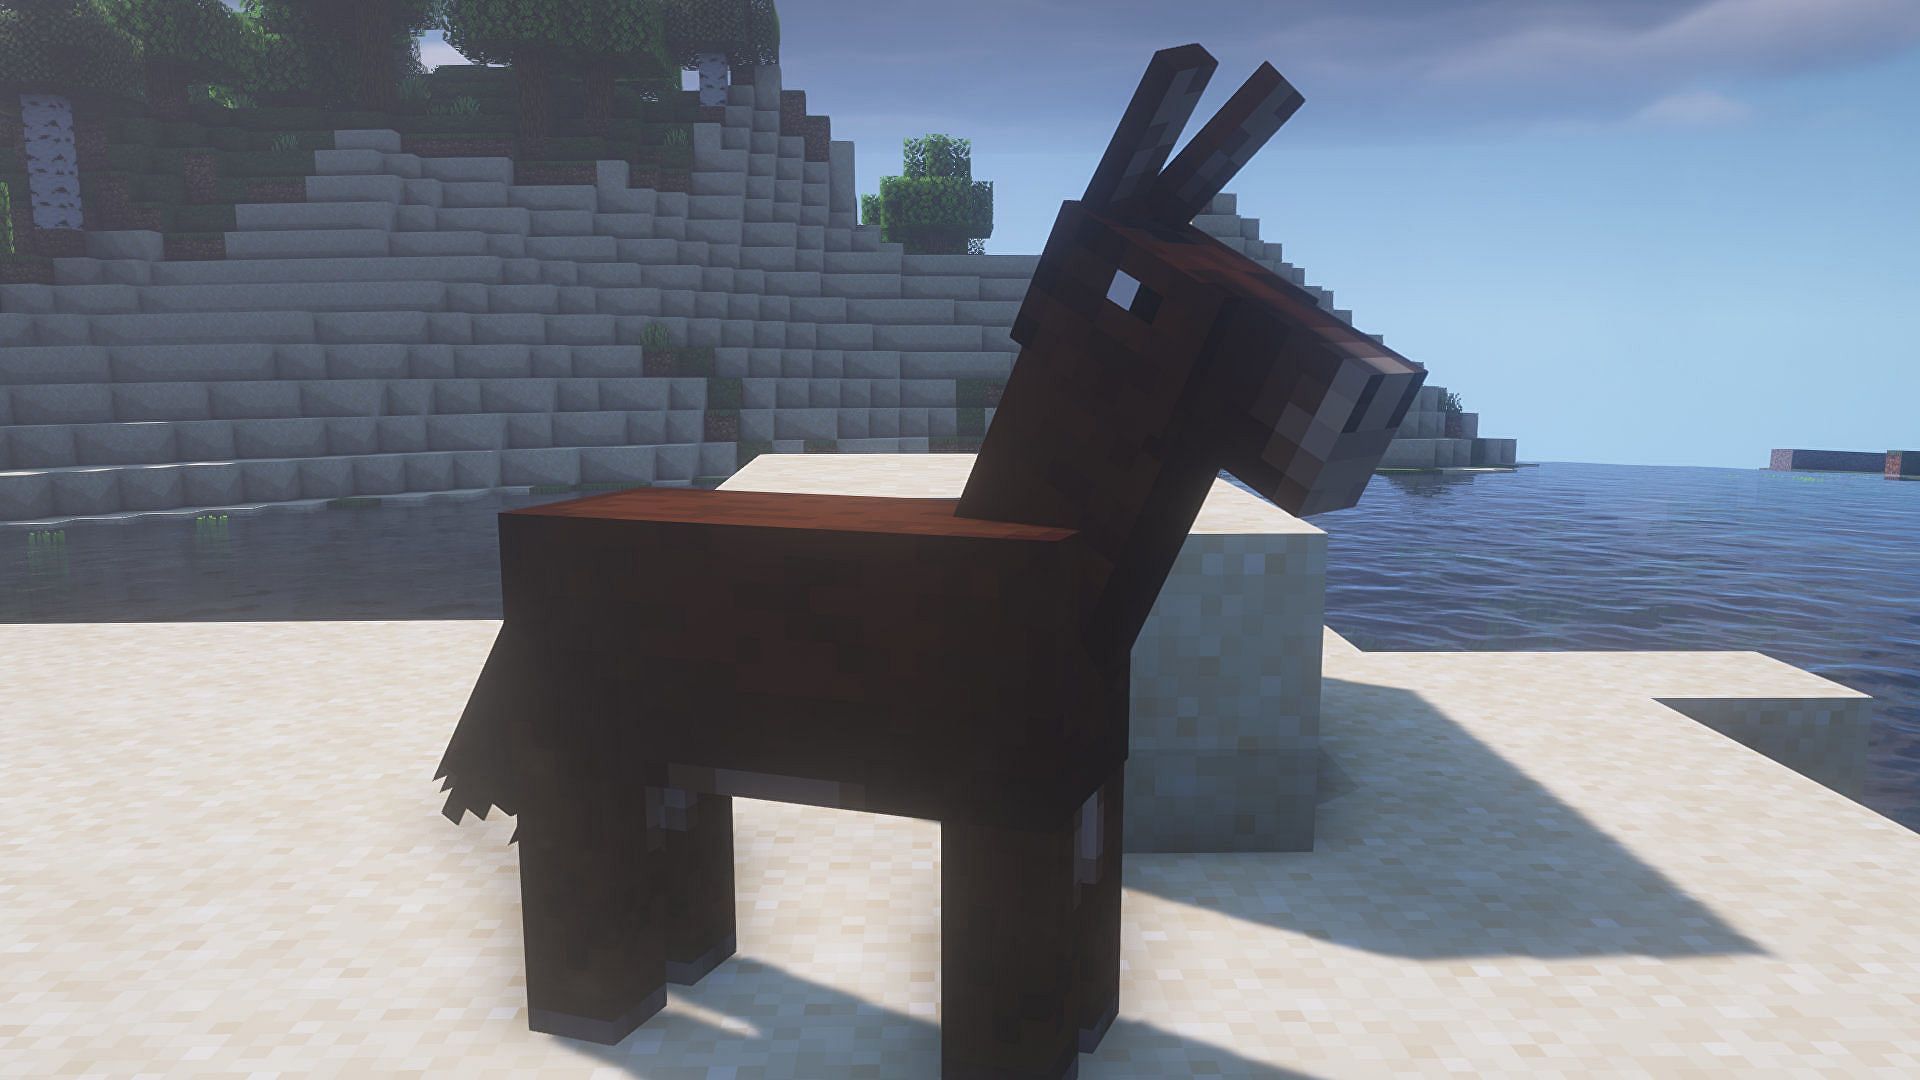 Mule (Image via Minecraft)